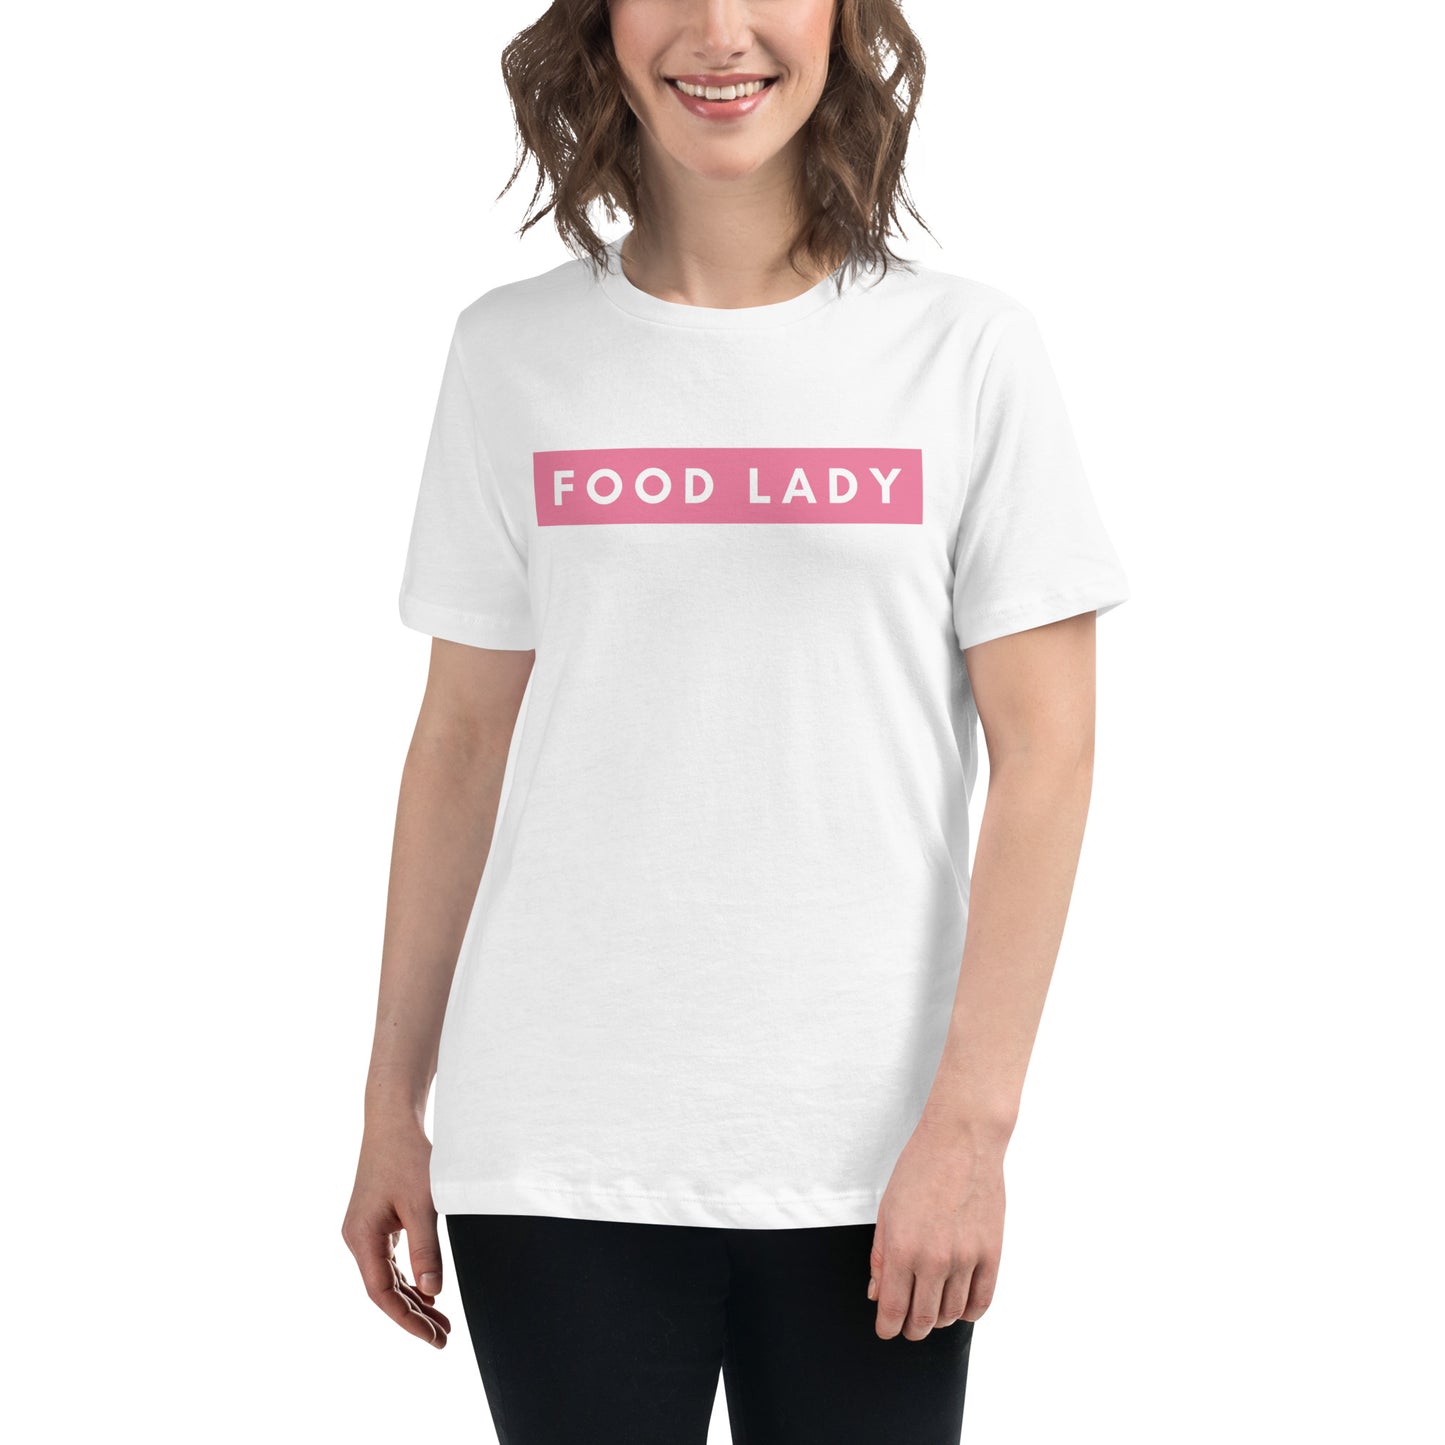 Food Lady Tee